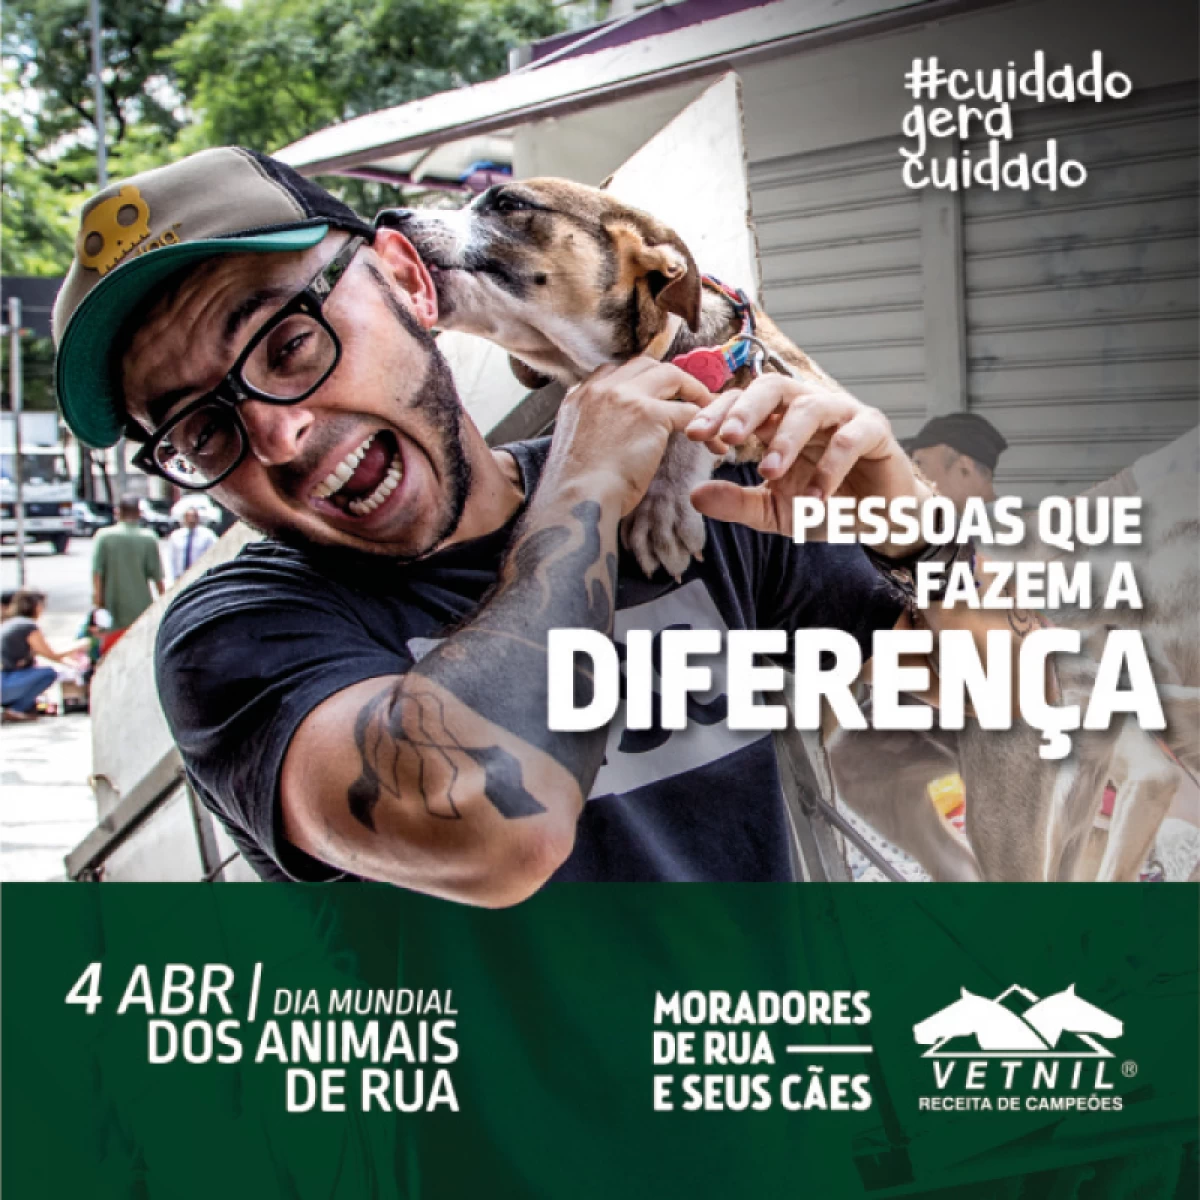 Moradores de Ruas e Seus Cães - Pessoas que Fazem a Diferença